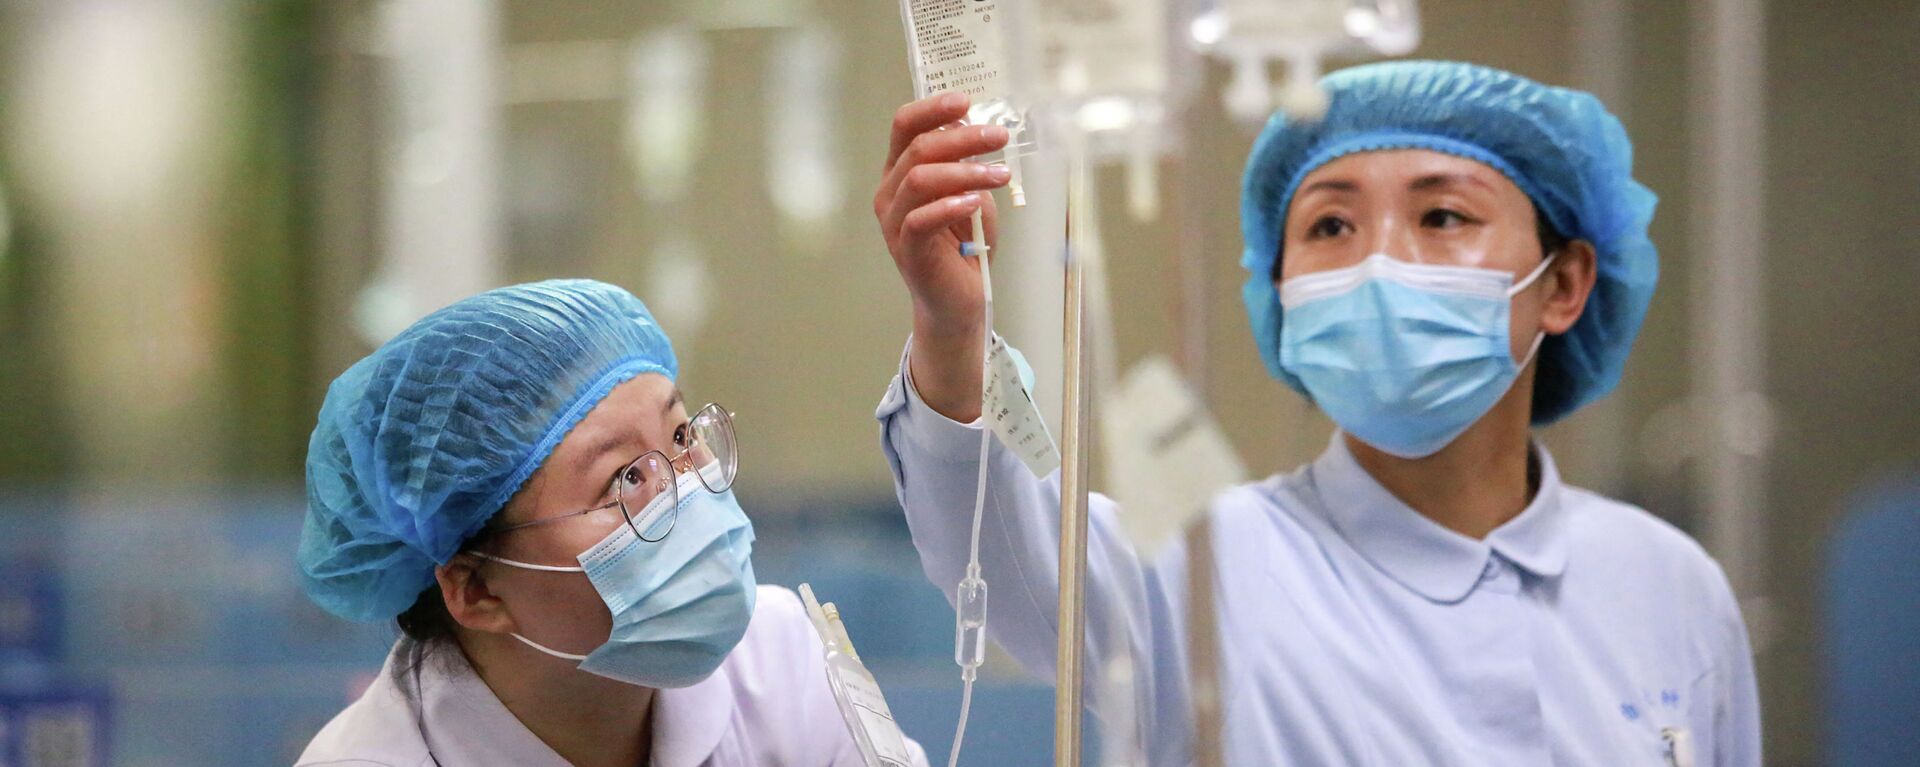 Медсестры в защитных костюмах поправляют капельницы в больнице с коронавирусом - Sputnik Қазақстан, 1920, 28.07.2021